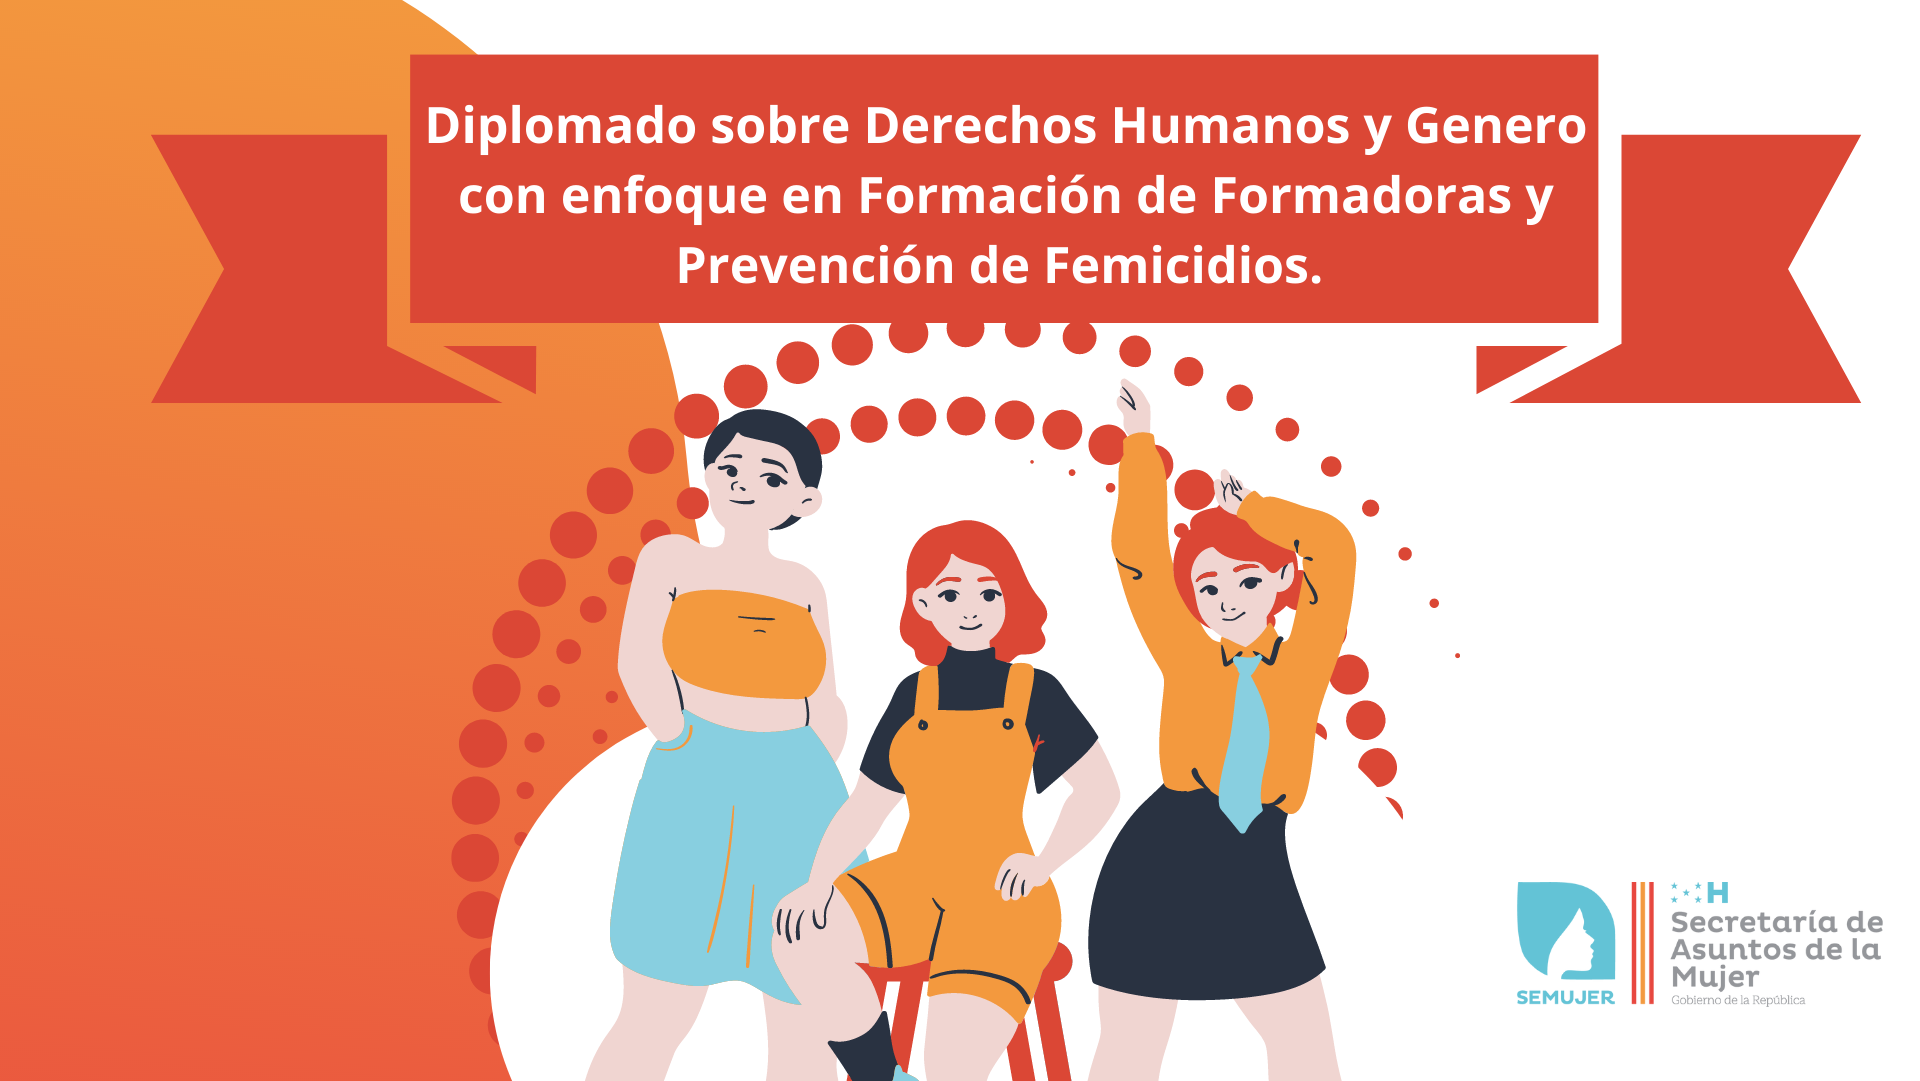 III Diplomado sobre Derechos Humanos y Género con enfoque en formación de formadoras y prevención de femicidios